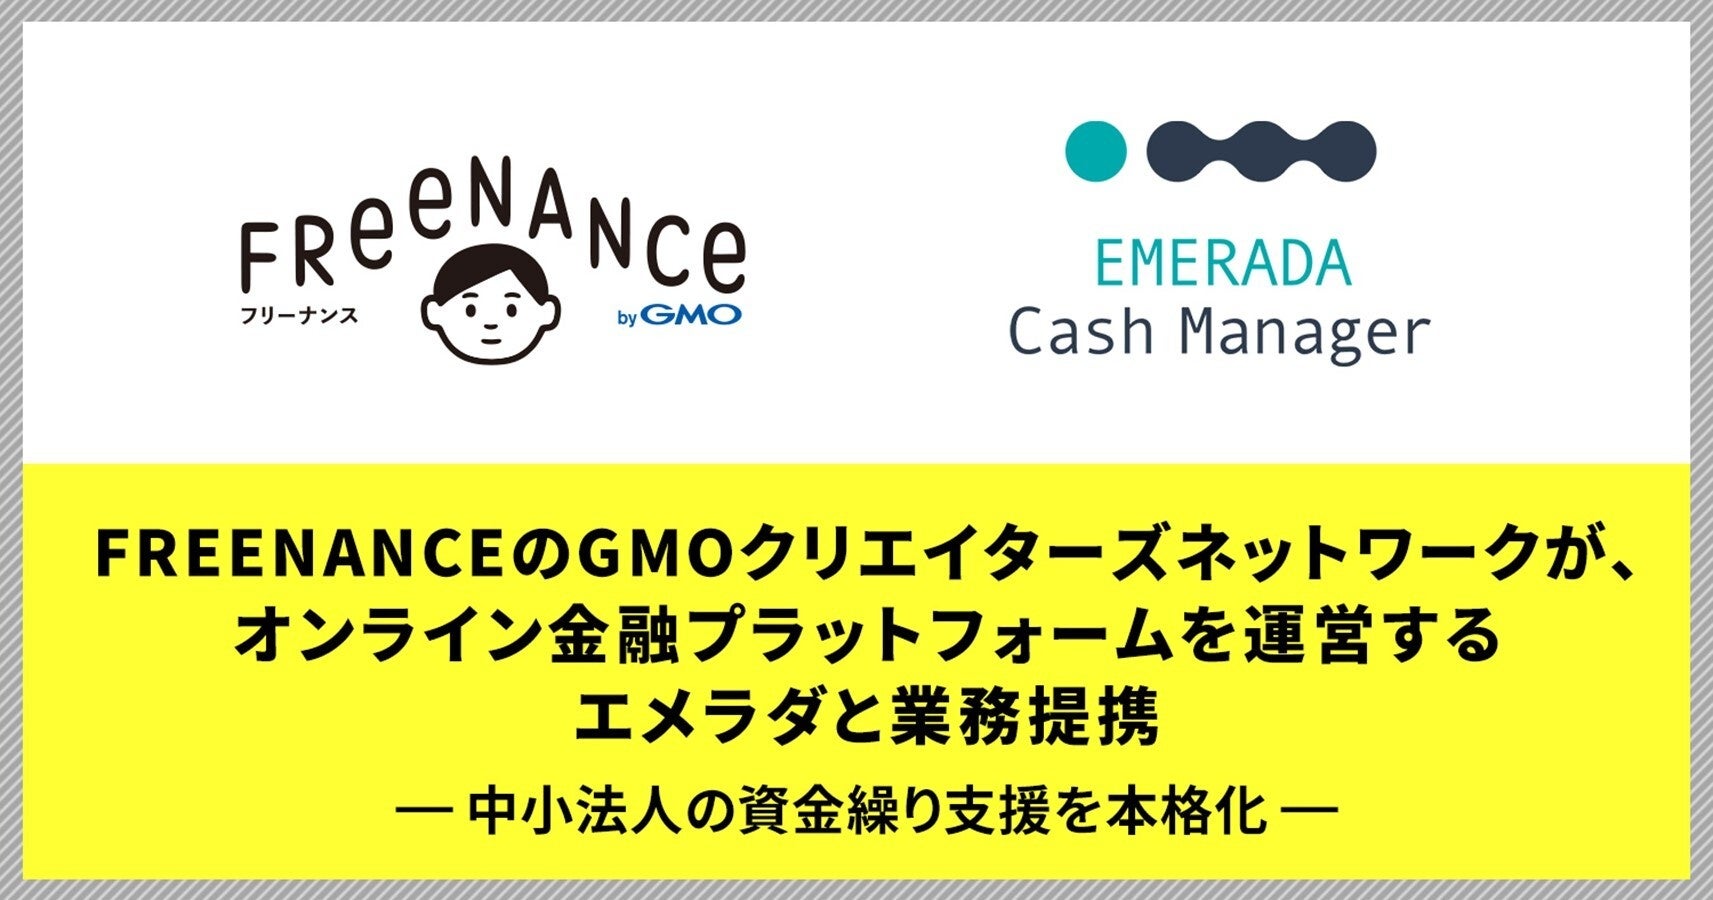 「FREENANCE byGMO」のGMOクリエイターズネットワークが、オンライン金融プラットフォームを運営するエメラダと業務提携【GMOクリエイターズネットワーク】